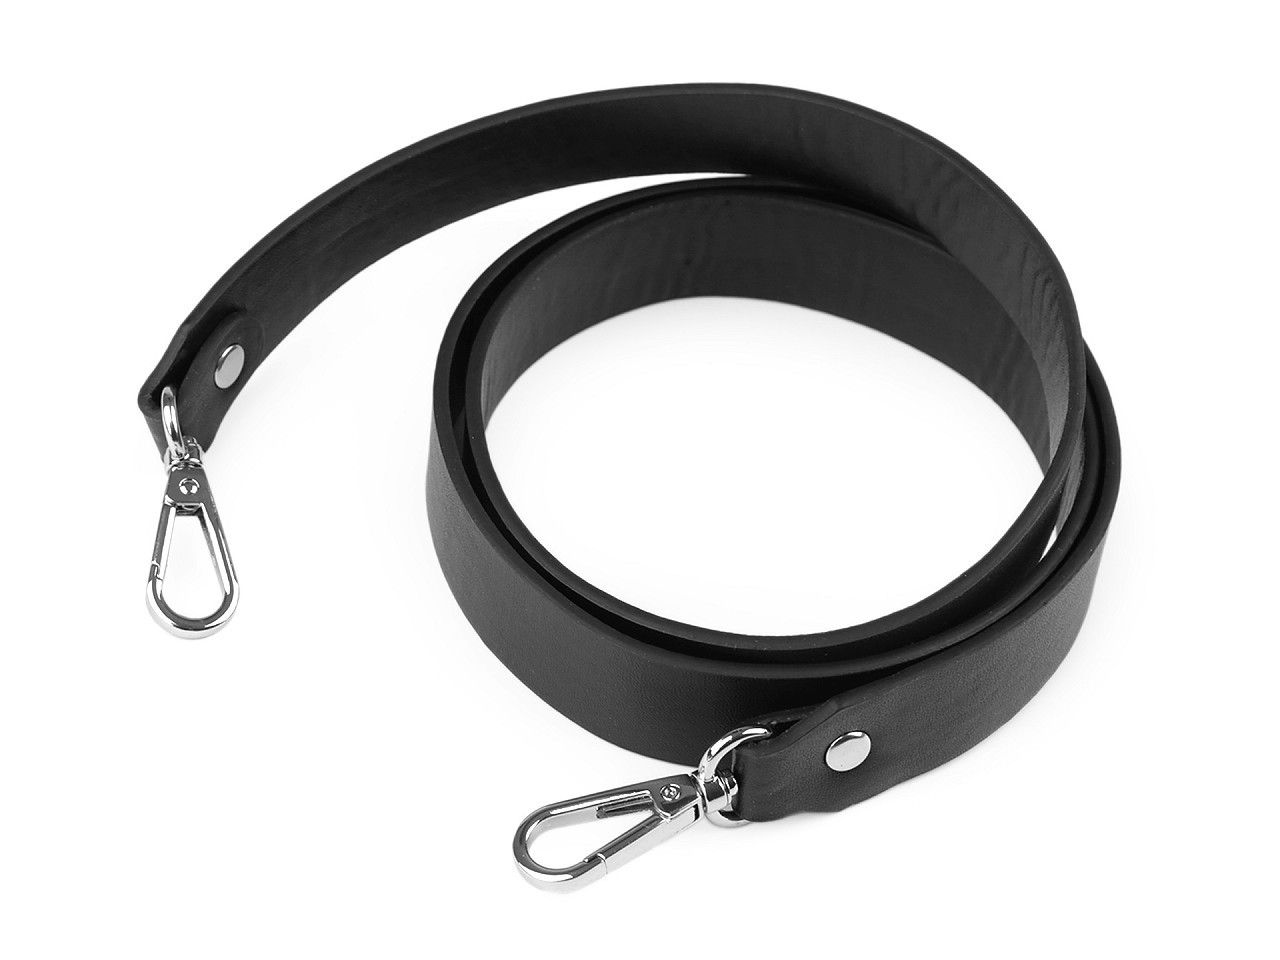 Koženkový popruh / ucho na kabelku s karabinami šíře 2,4 cm, barva 2 černá nikl